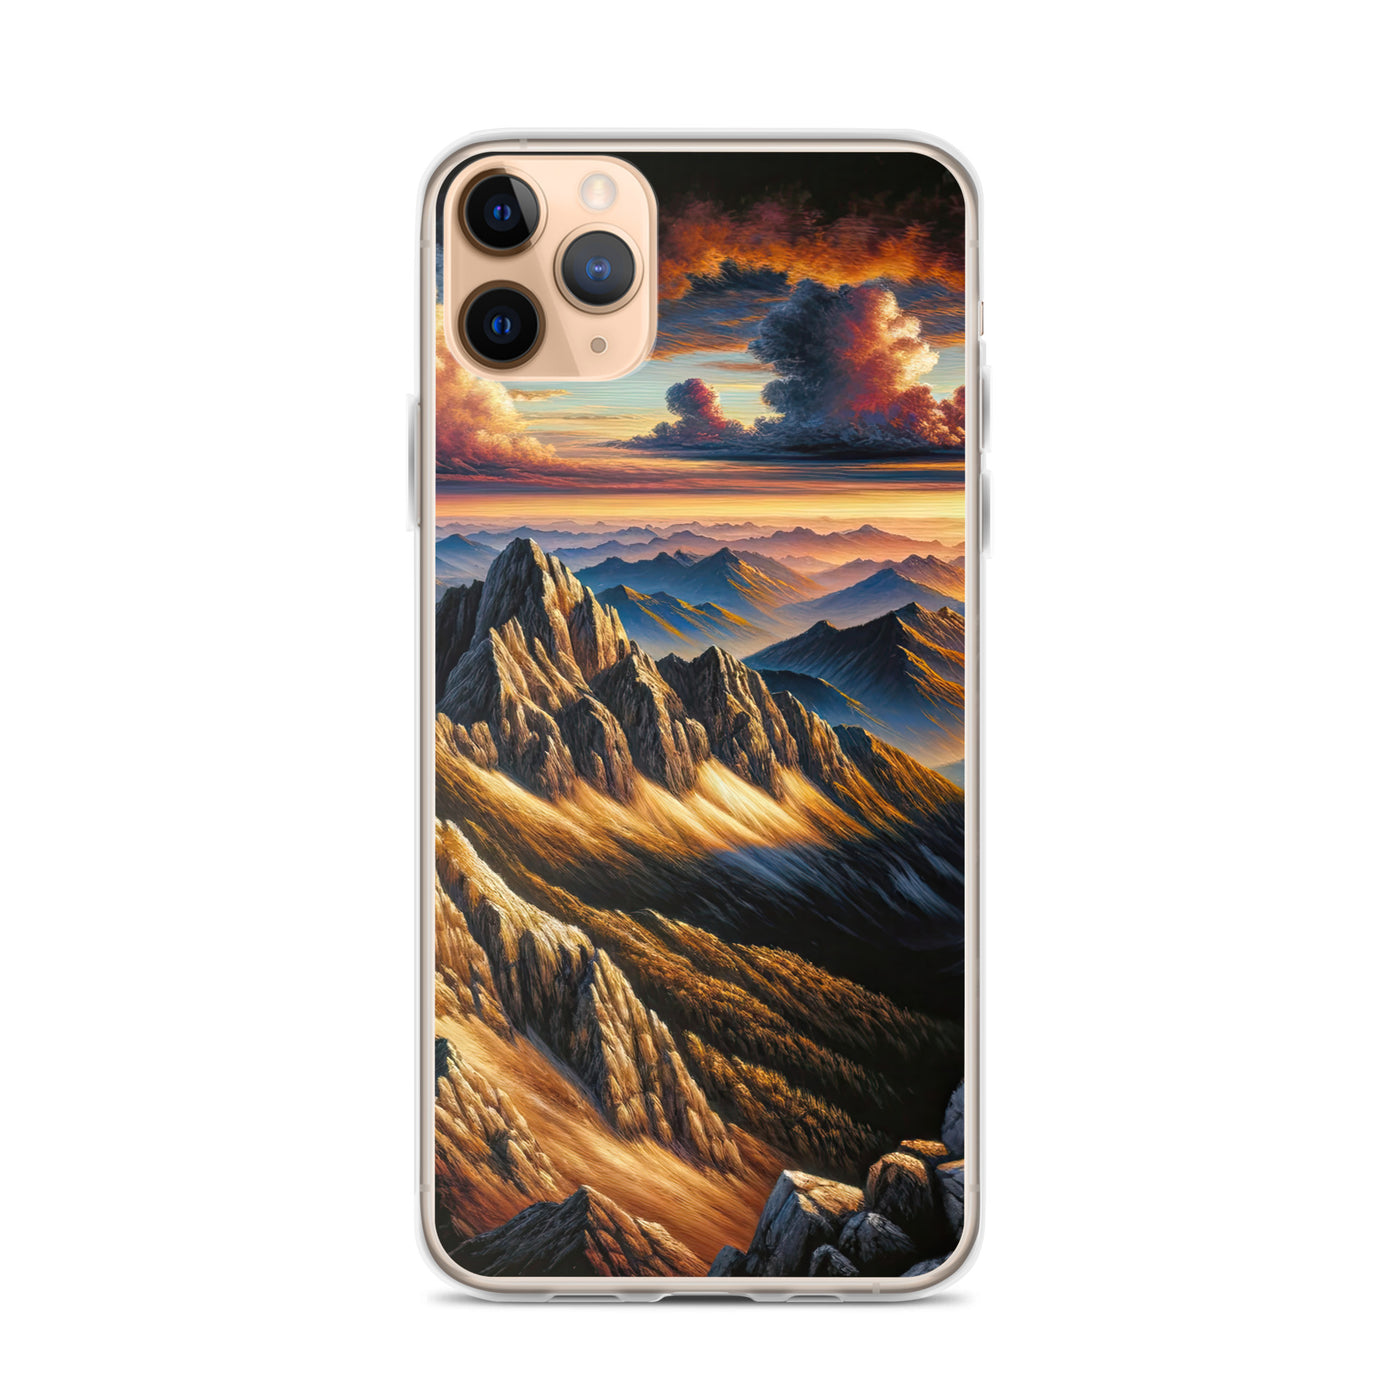 Alpen in Abenddämmerung: Acrylgemälde mit beleuchteten Berggipfeln - iPhone Schutzhülle (durchsichtig) berge xxx yyy zzz iPhone 11 Pro Max